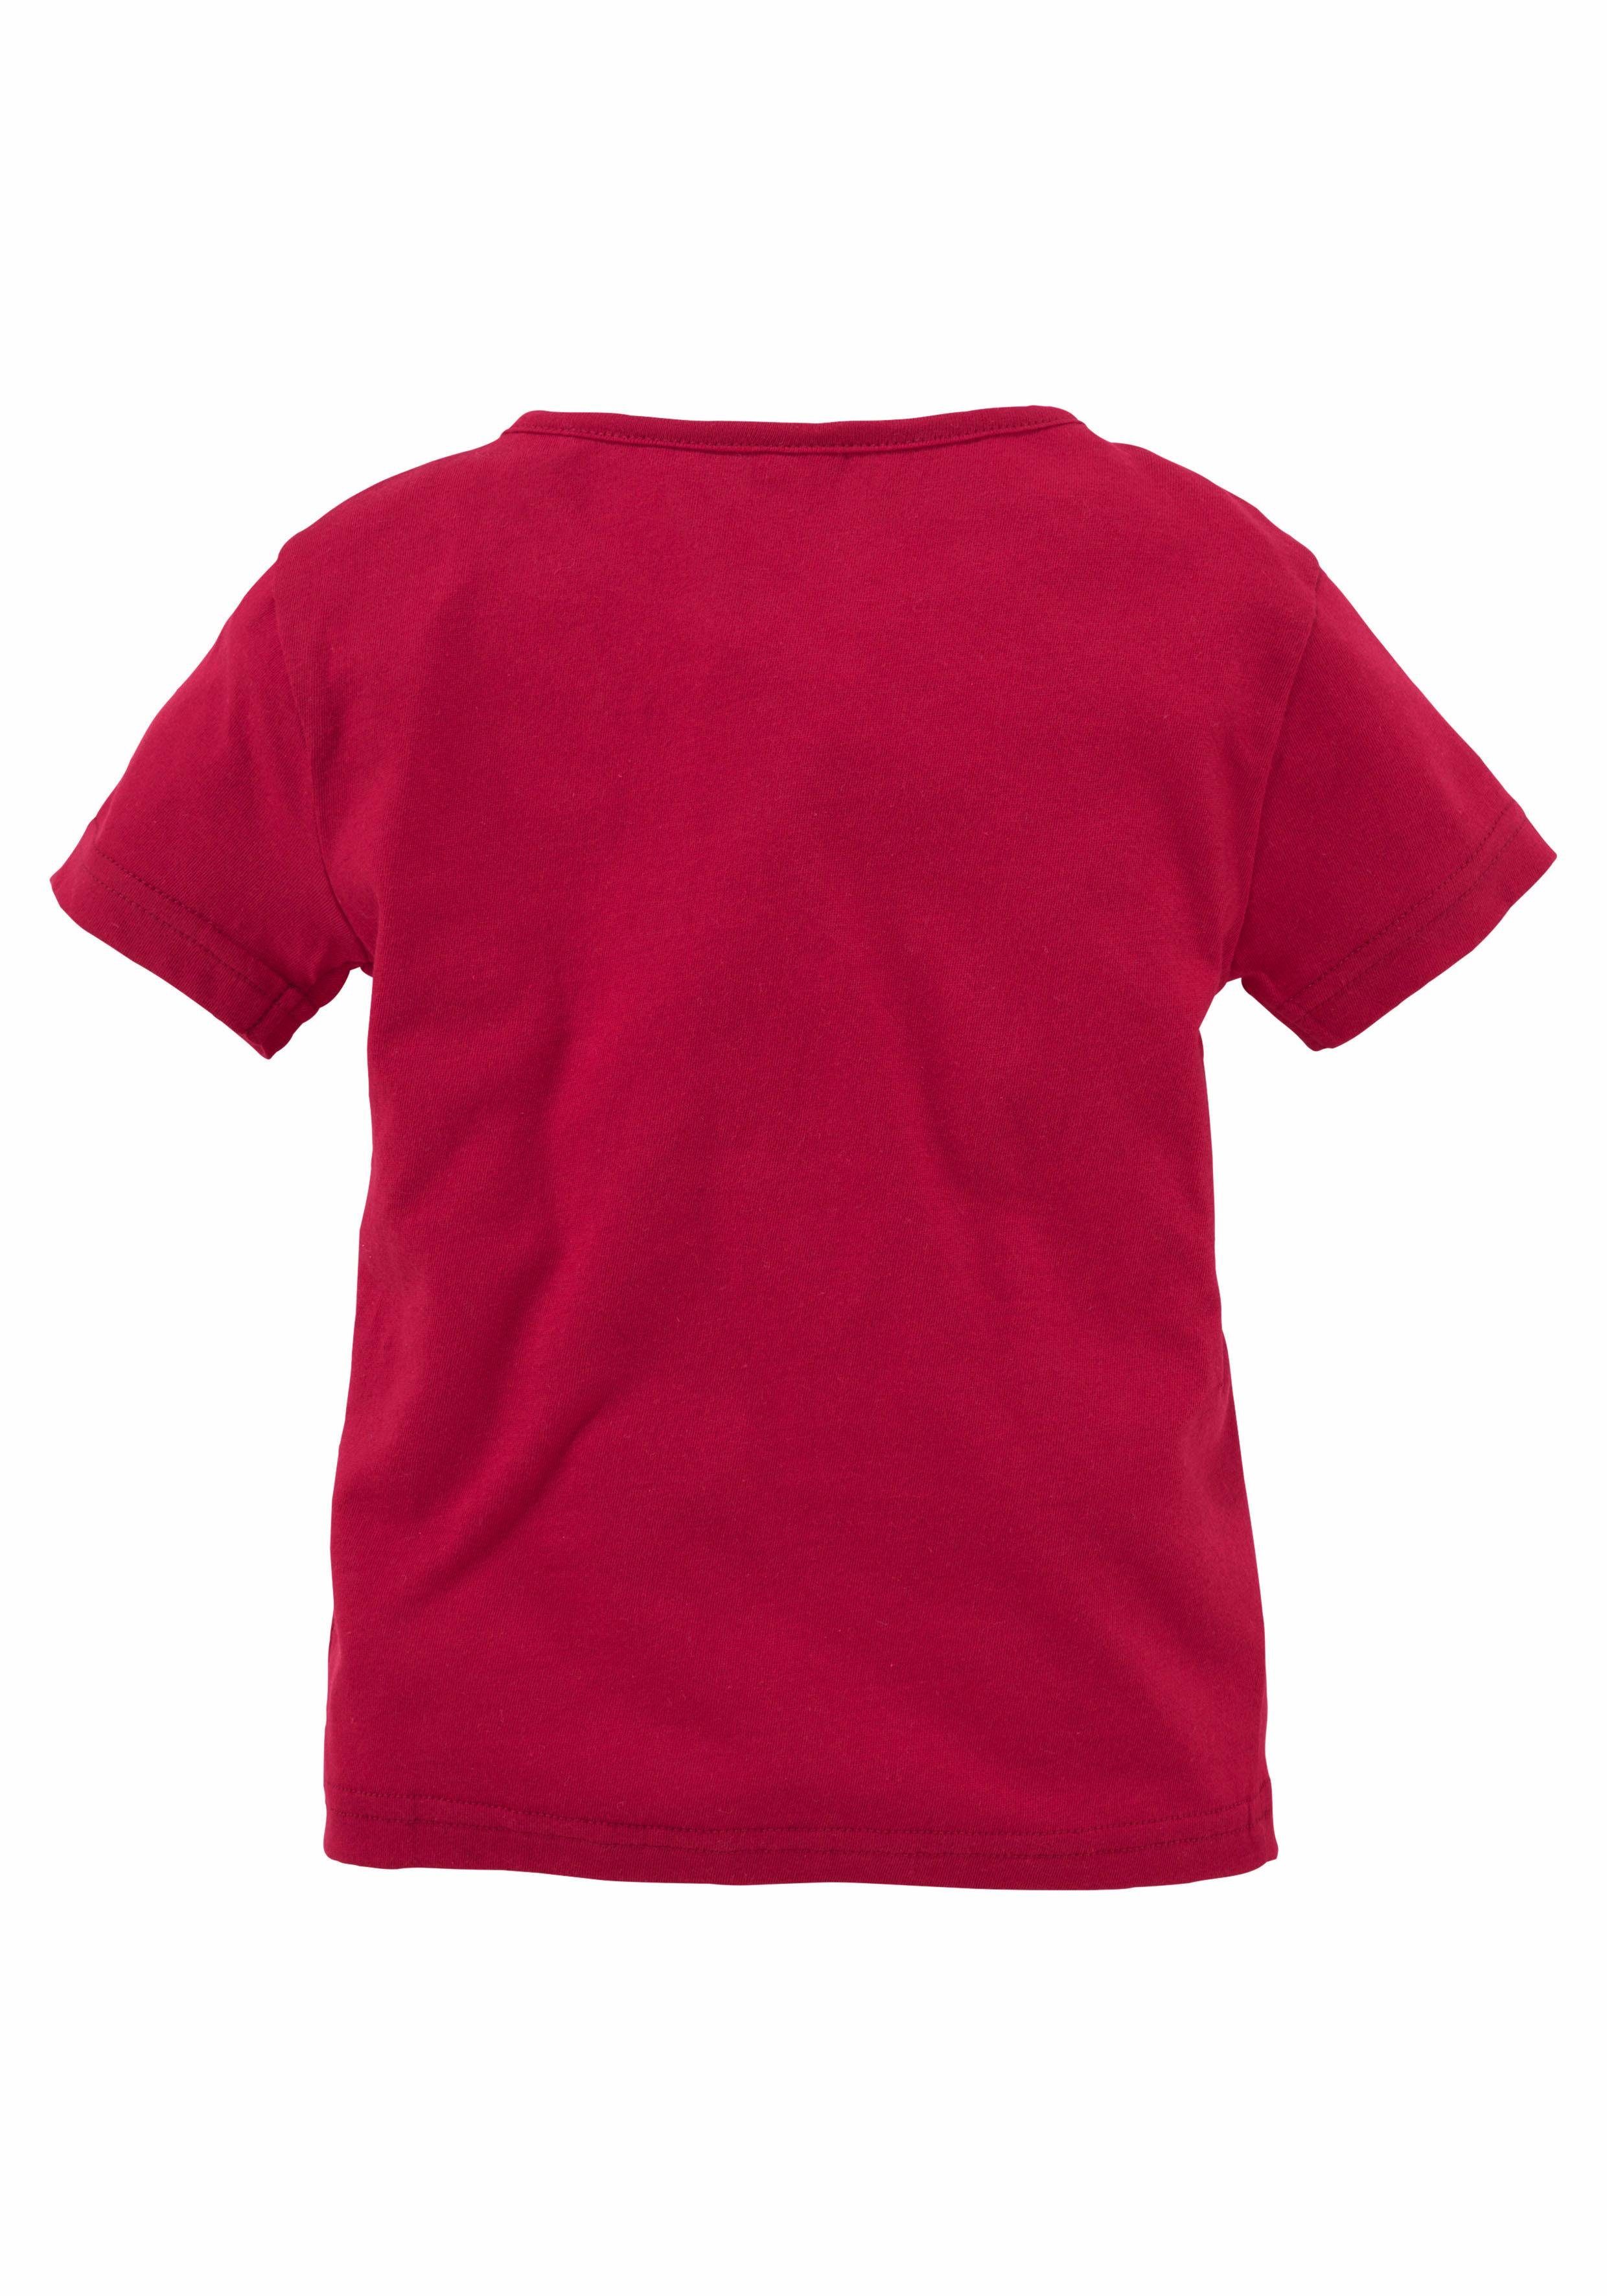 KIDSWORLD T-Shirt, Druck "Einhorn" mit Glitzereffekten